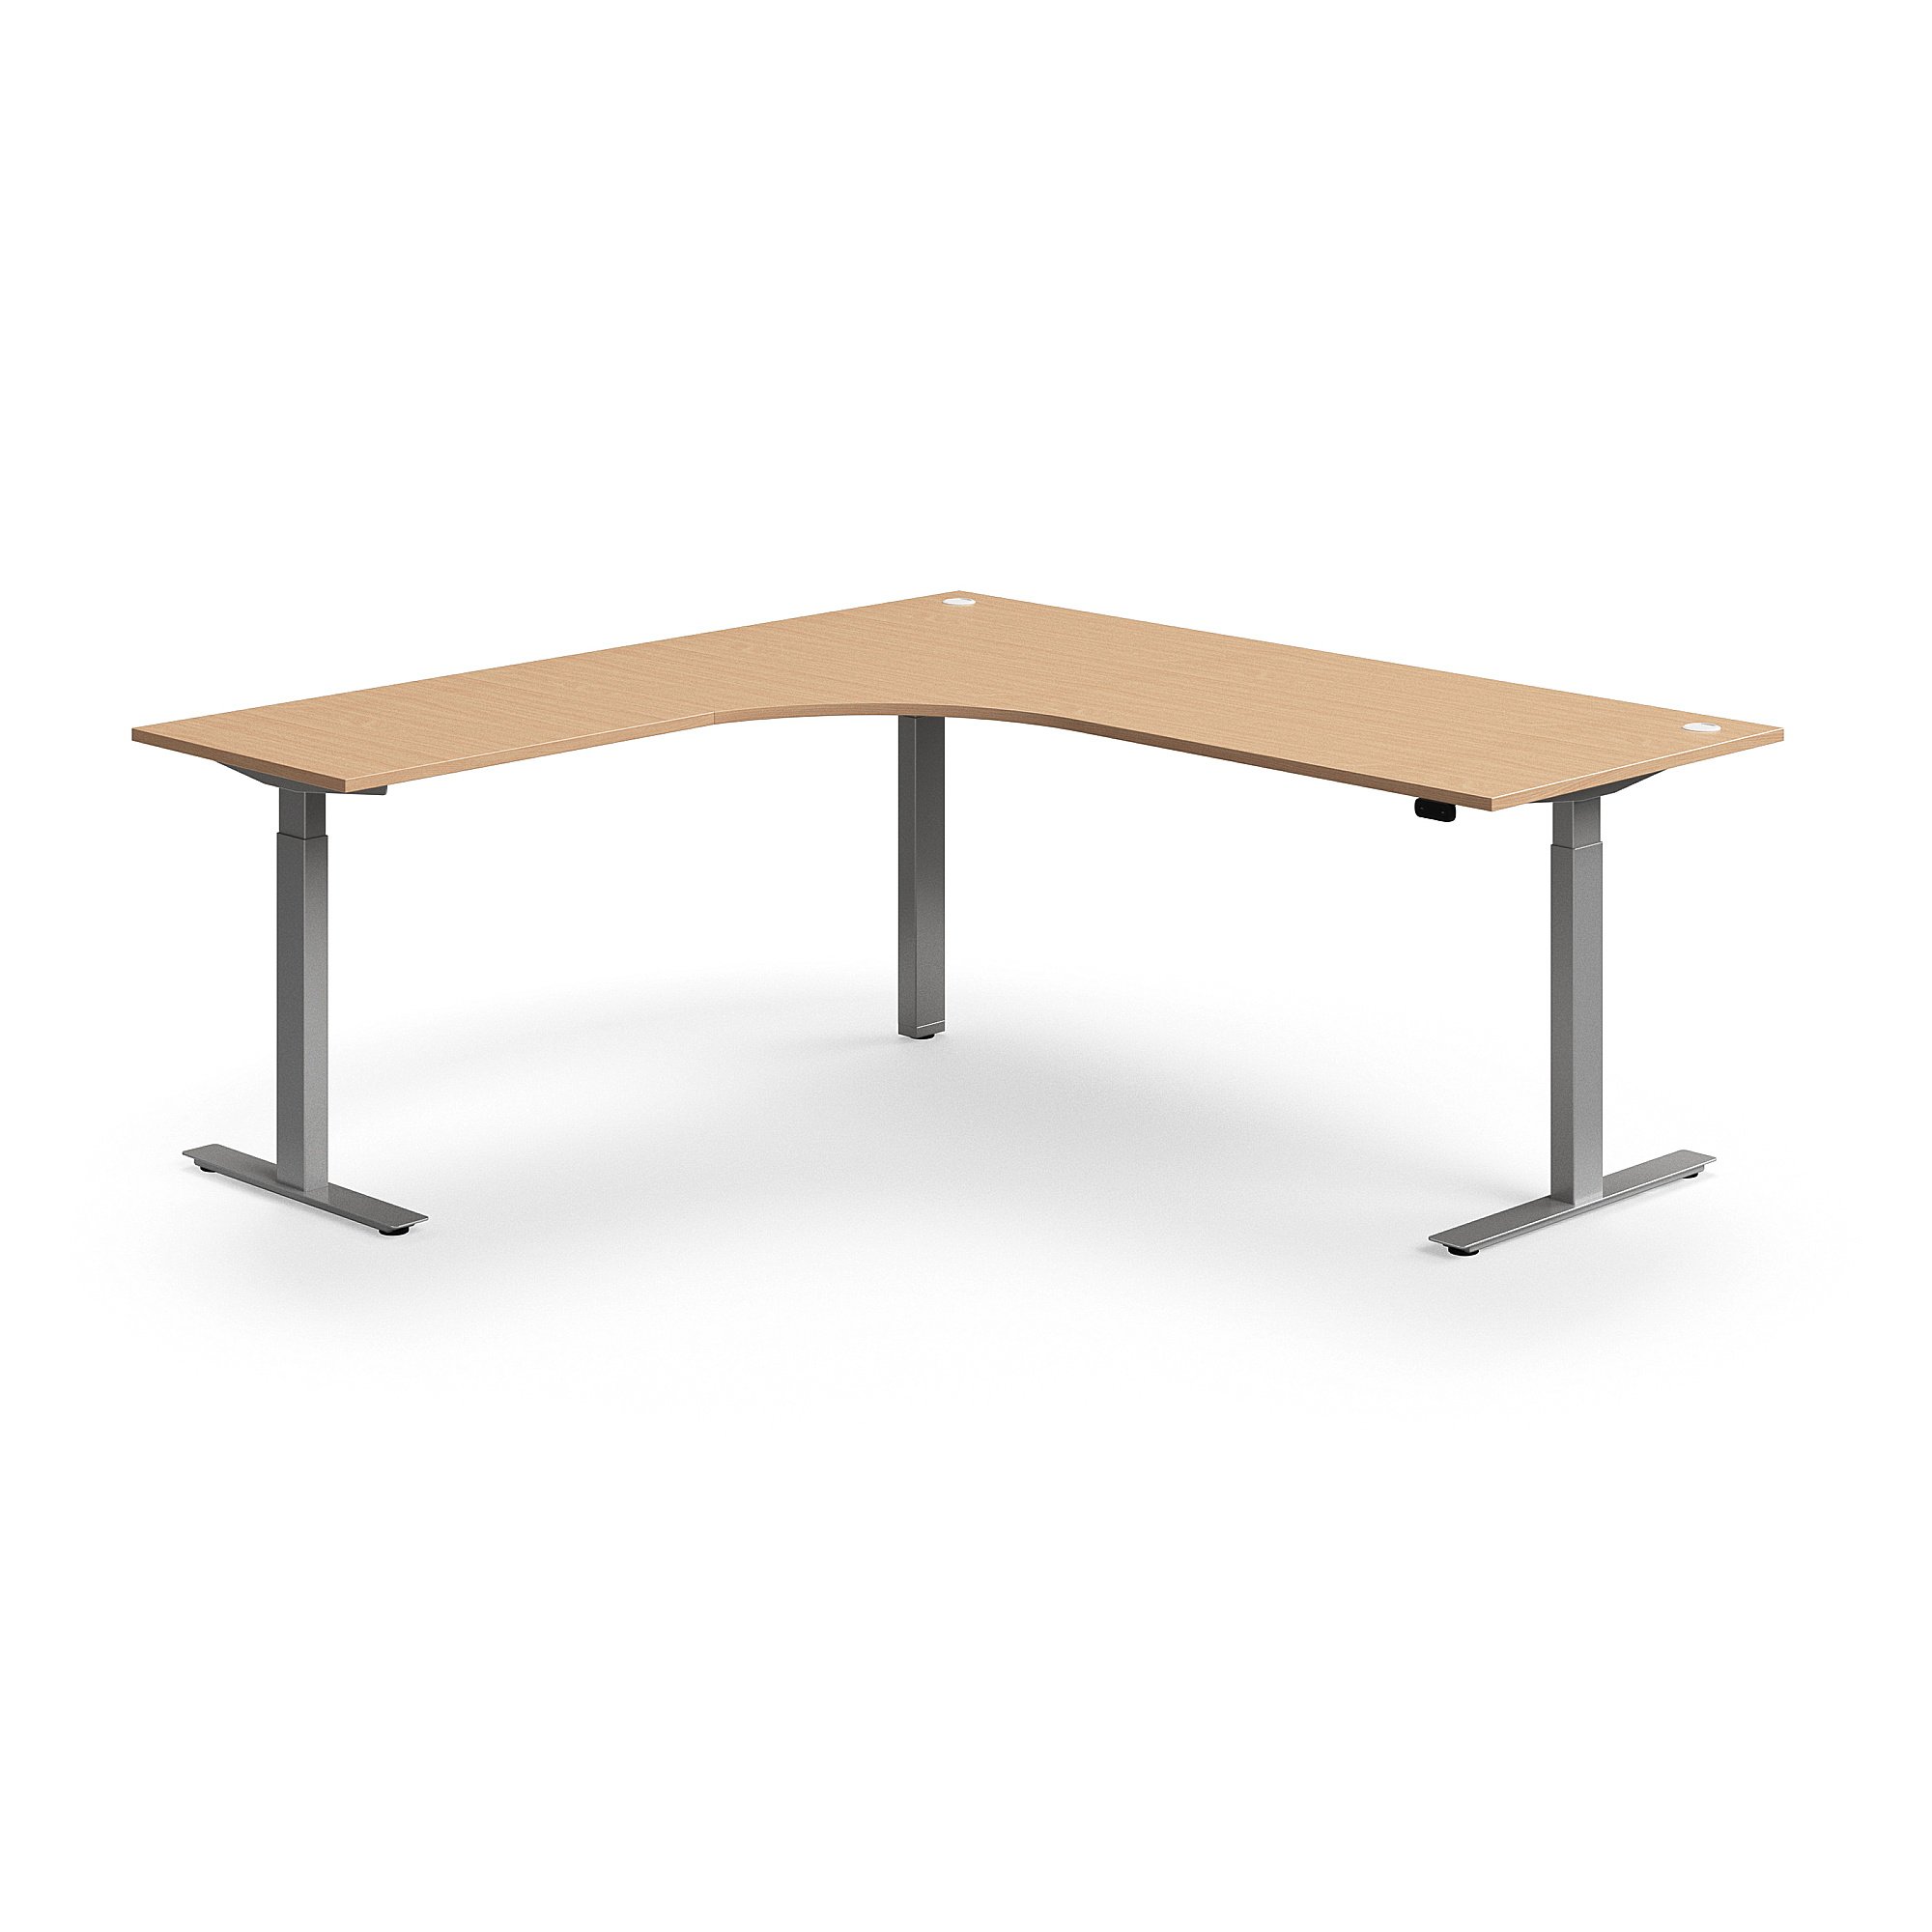 Výškově nastavitelný stůl FLEXUS, rohový, 2000x2000 mm, stříbrná podnož, buk